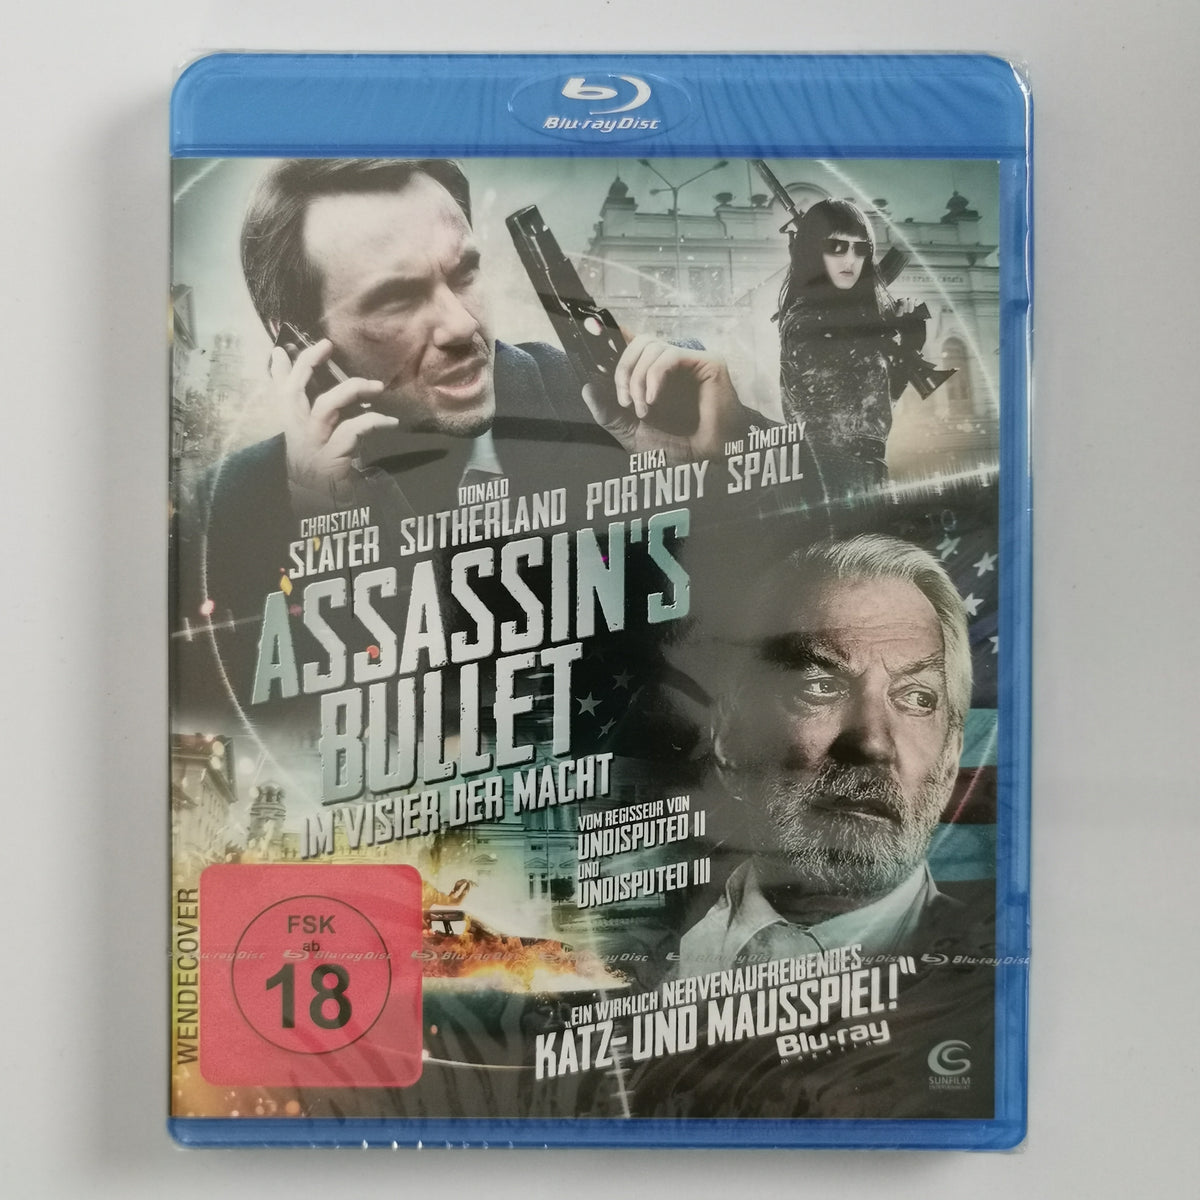 Assassins Bullet Im Visier d. [Blu ray]